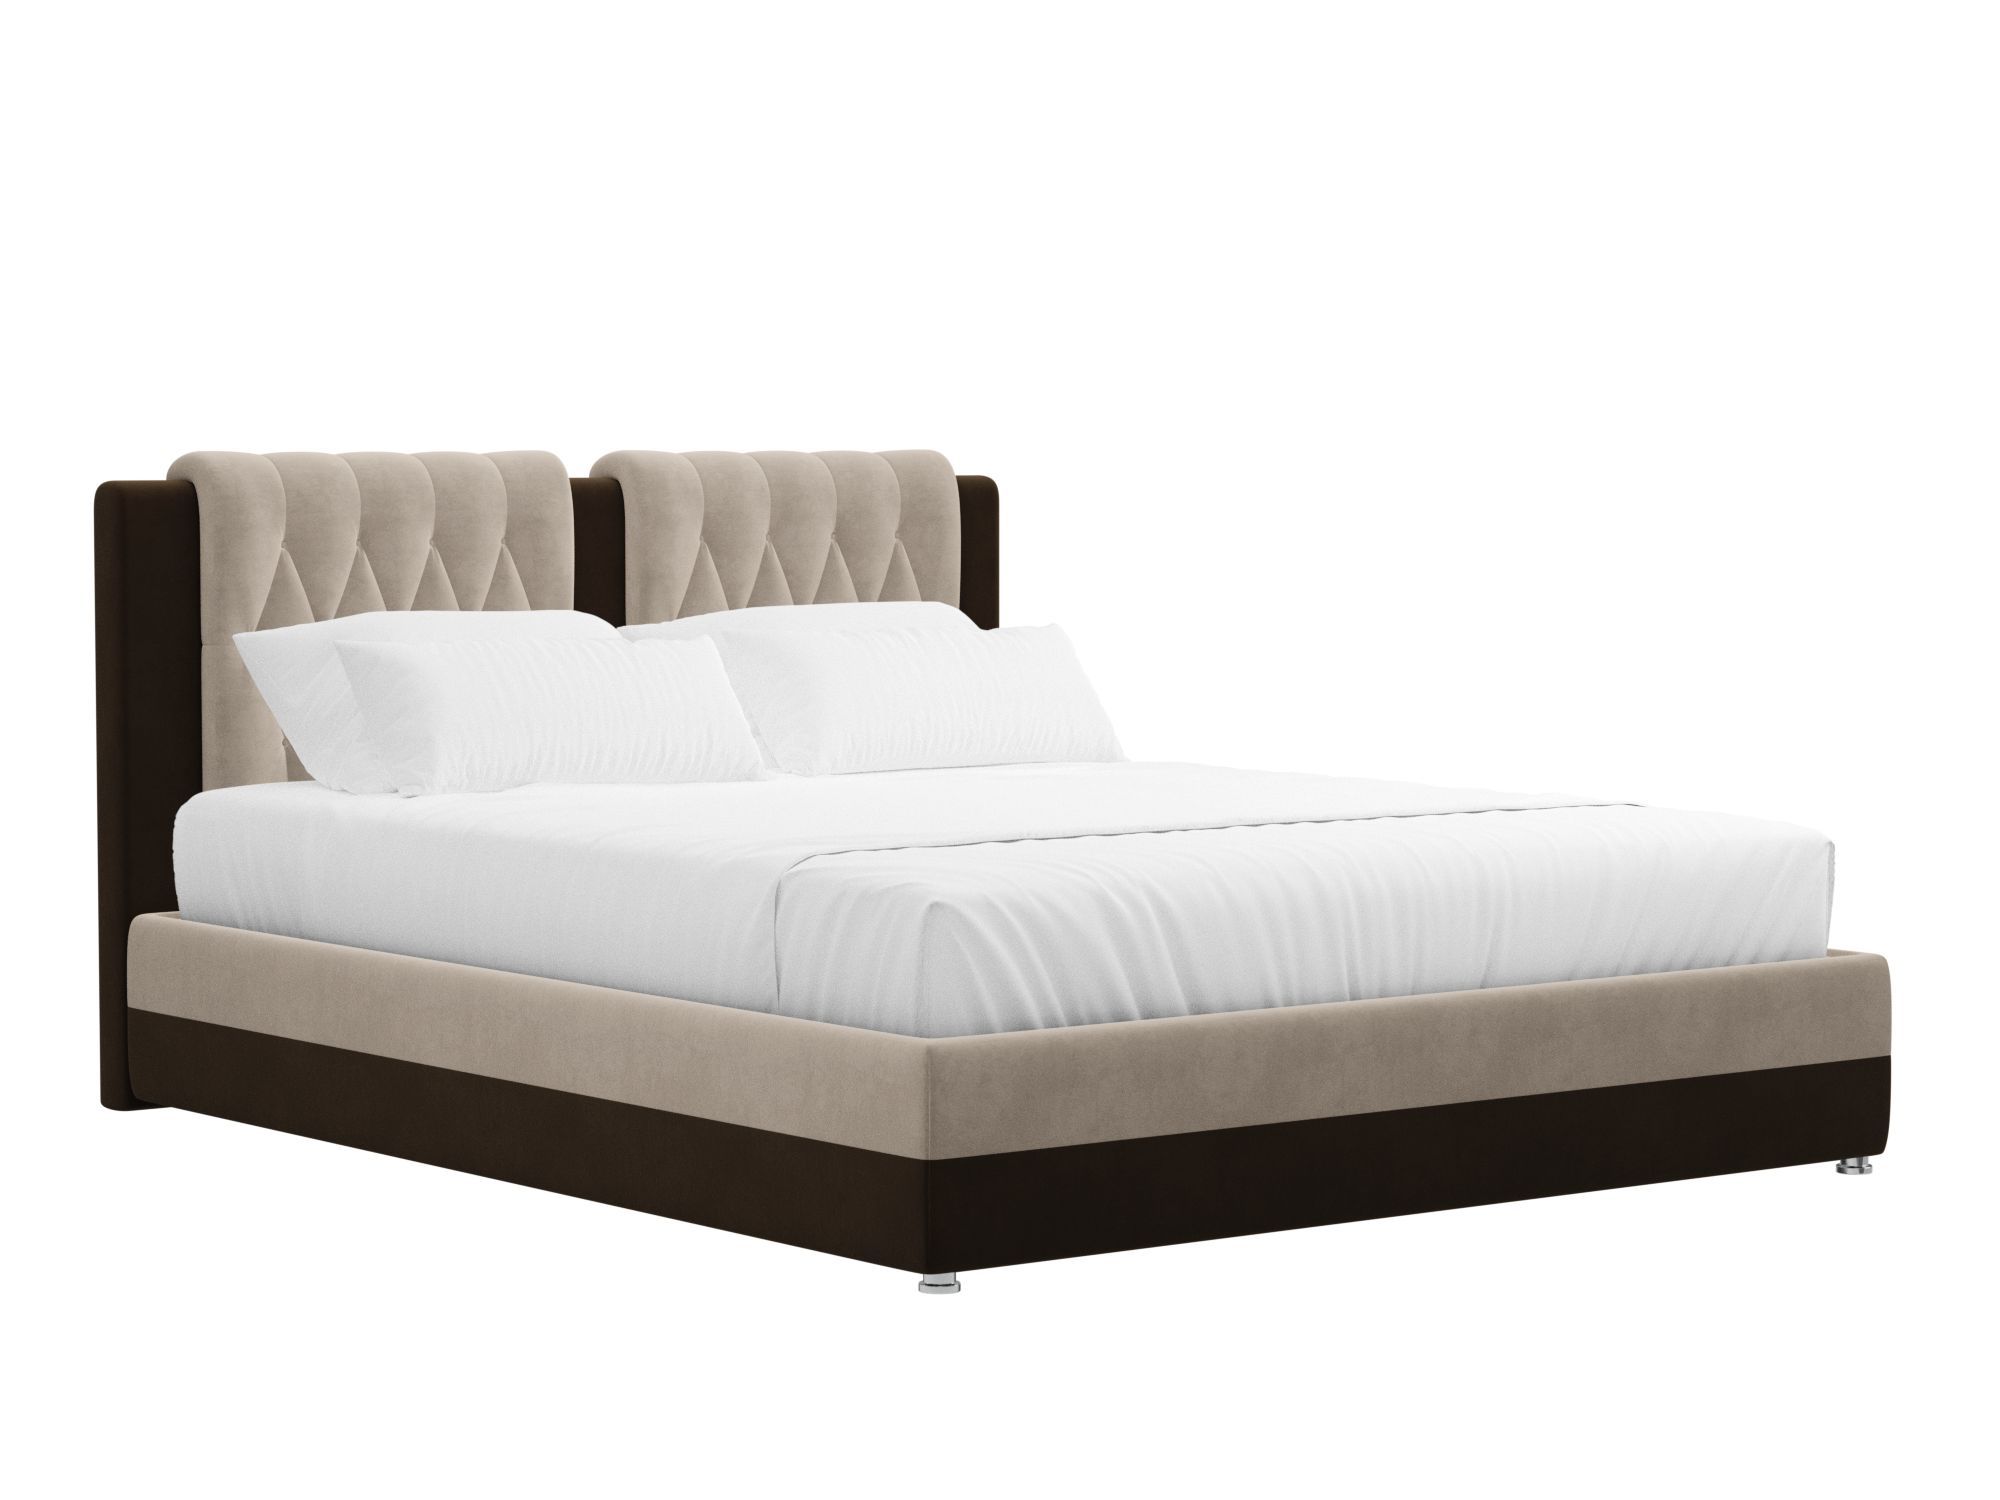 Кровать Камилла (160x200) Бежевый, Коричневый, ЛДСП кровать догма 160х200 слива валлис венге светлый коричневый бежевый лдсп мдф